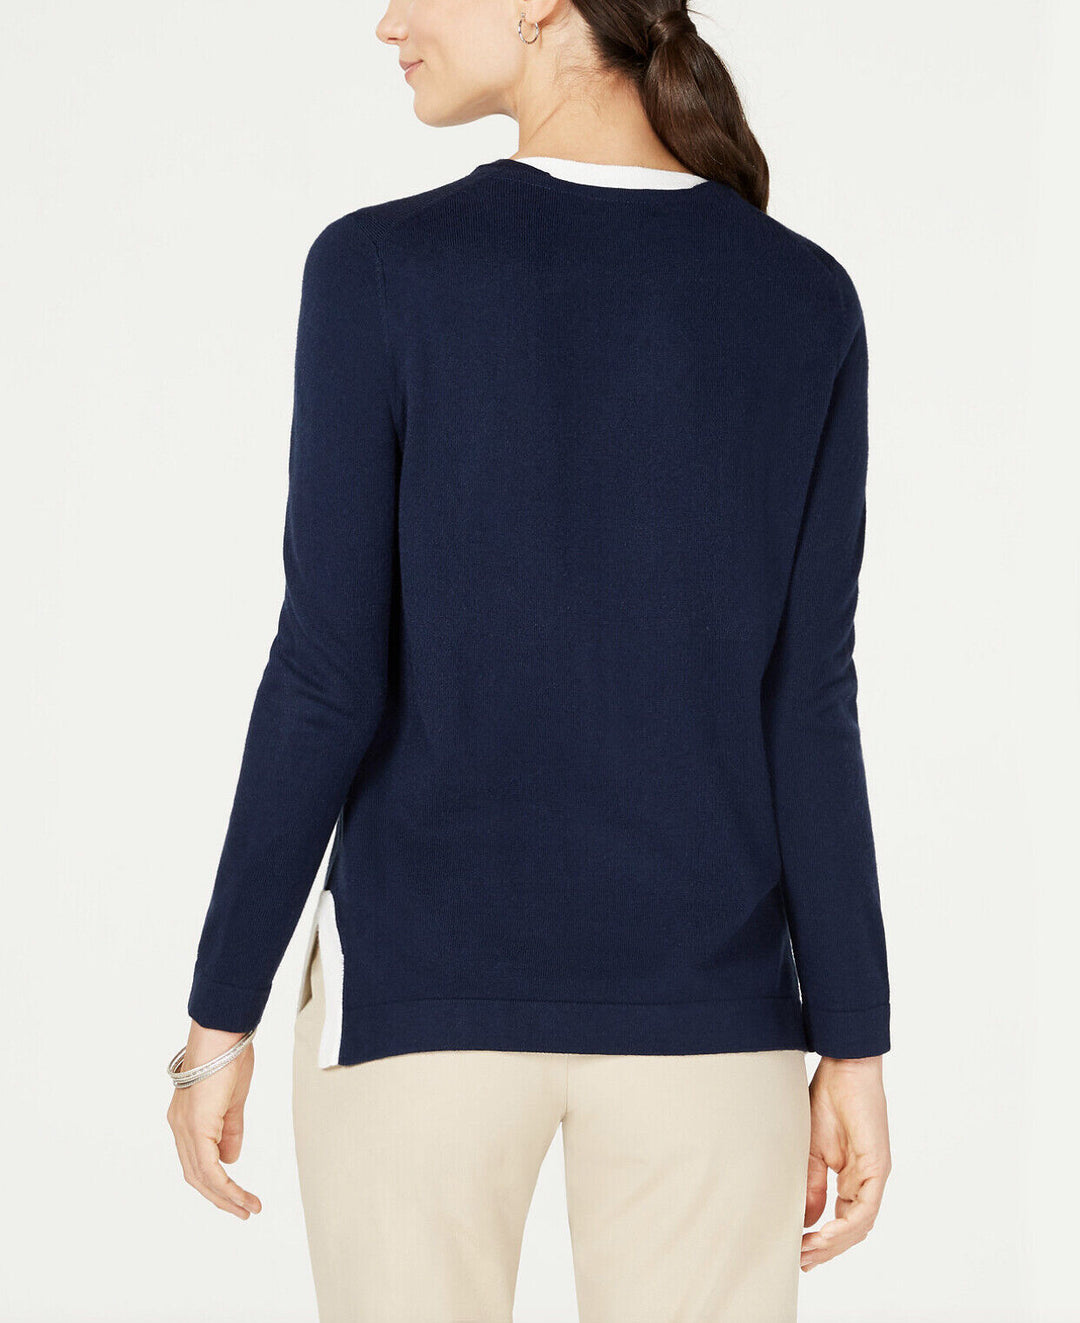 Women's Petite Contrast-Trim Sweater